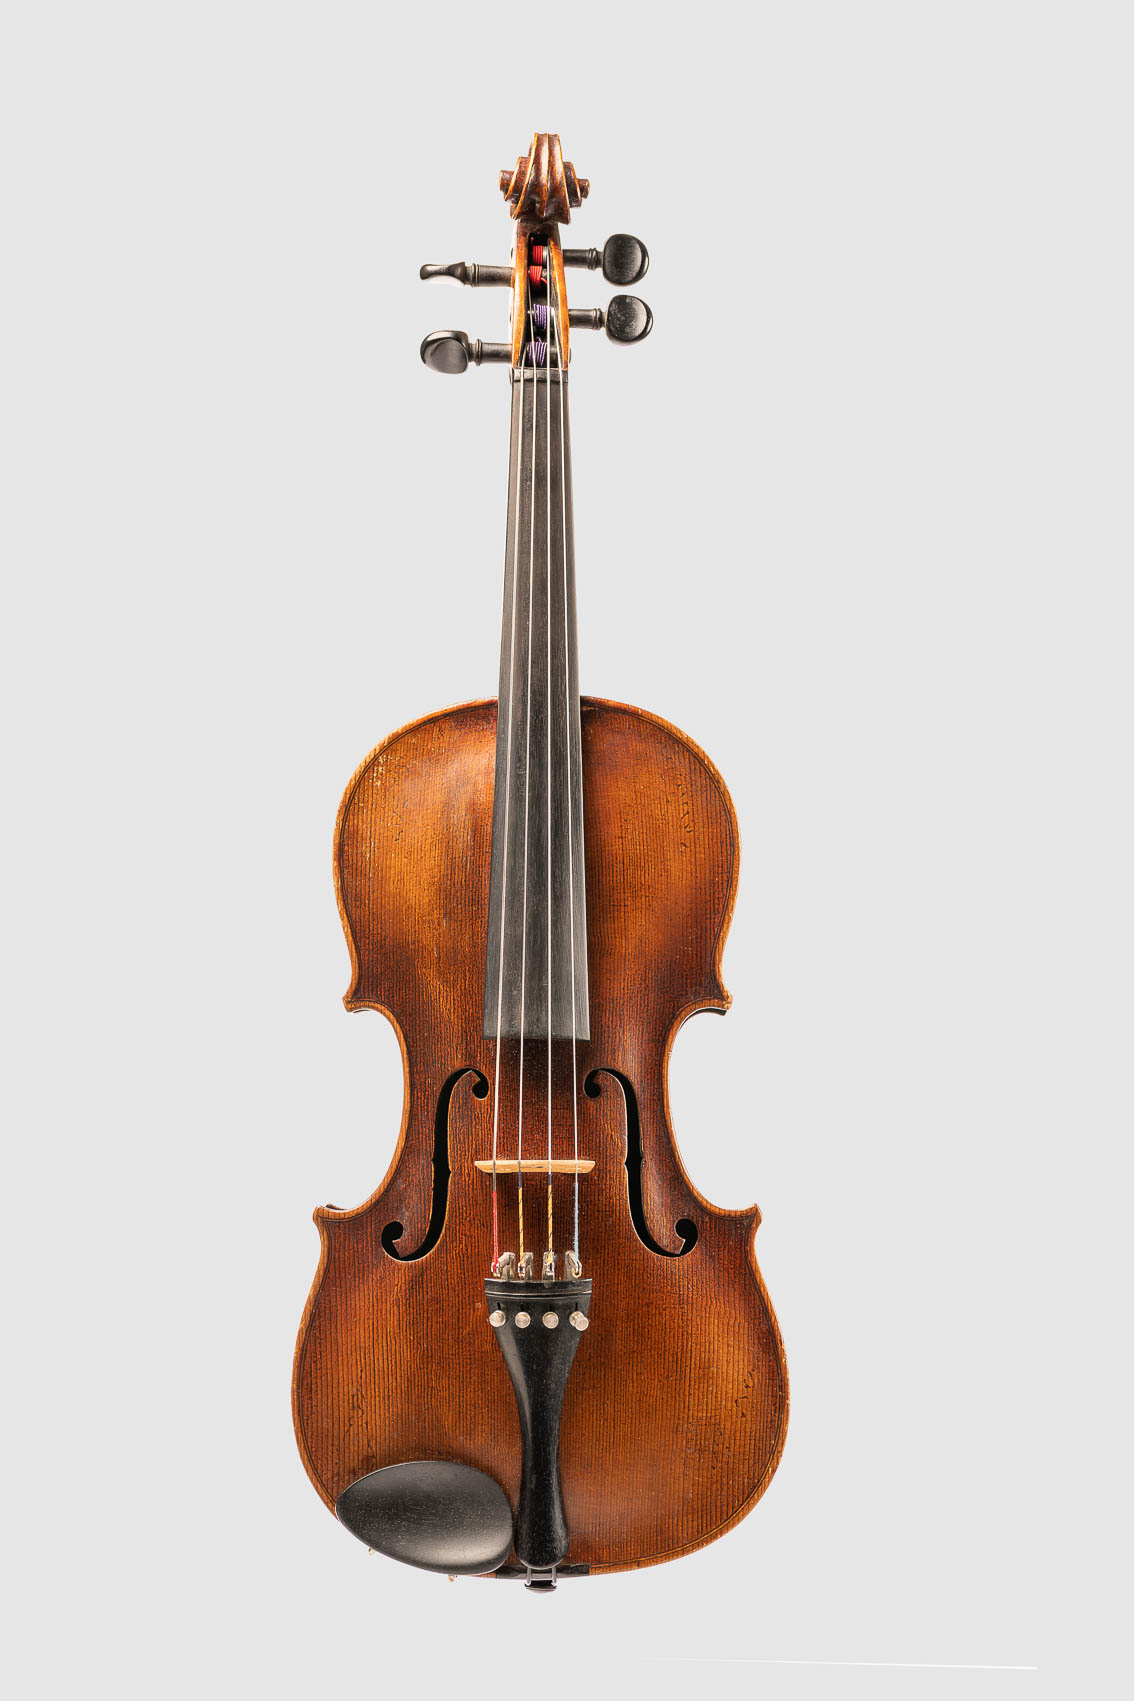 Geige bzw. Bratsche, Streichinstrumentes von vorne. Freisteller, Packshoot.